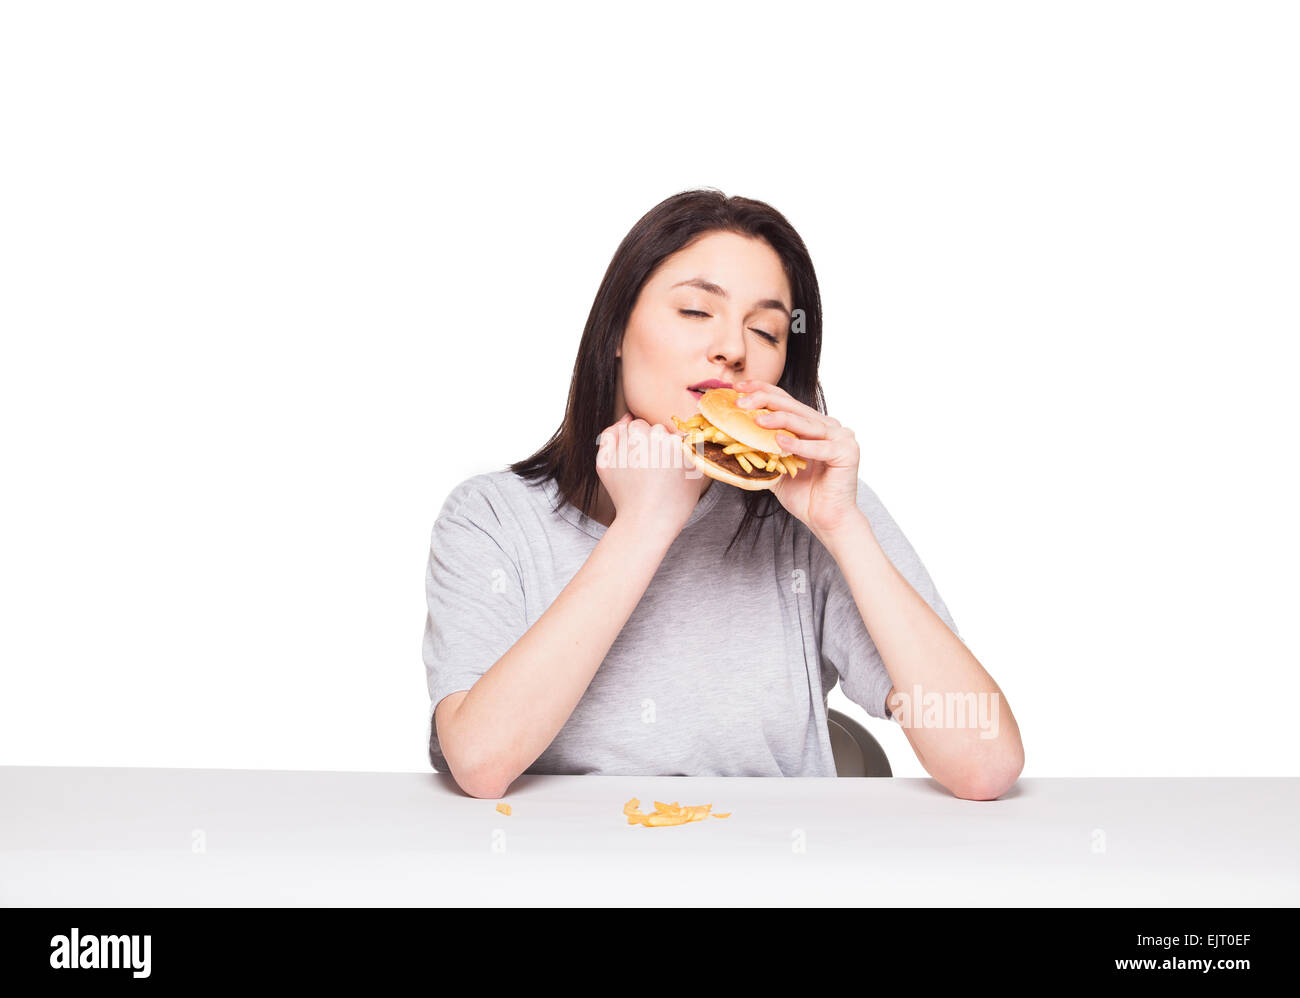 Giovane donna naturale di mangiare cibo spazzatura, hamburger e patatine fritte, su sfondo bianco Foto Stock